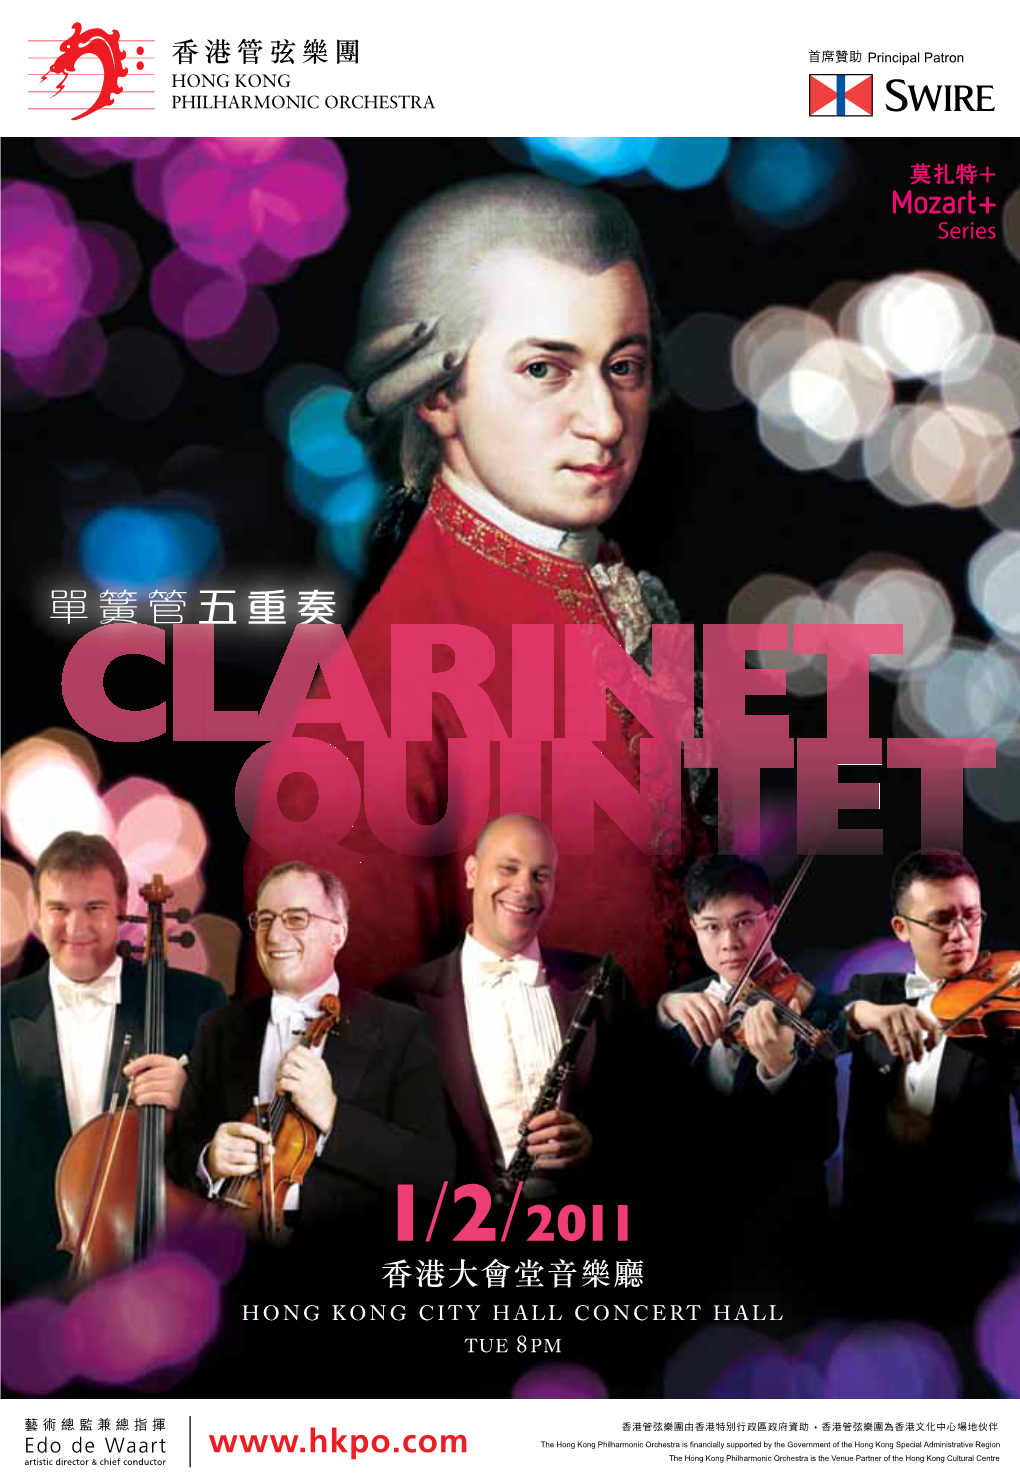 莫扎特+： 單簧管五重奏 Mozart+: Clarinet Quintet